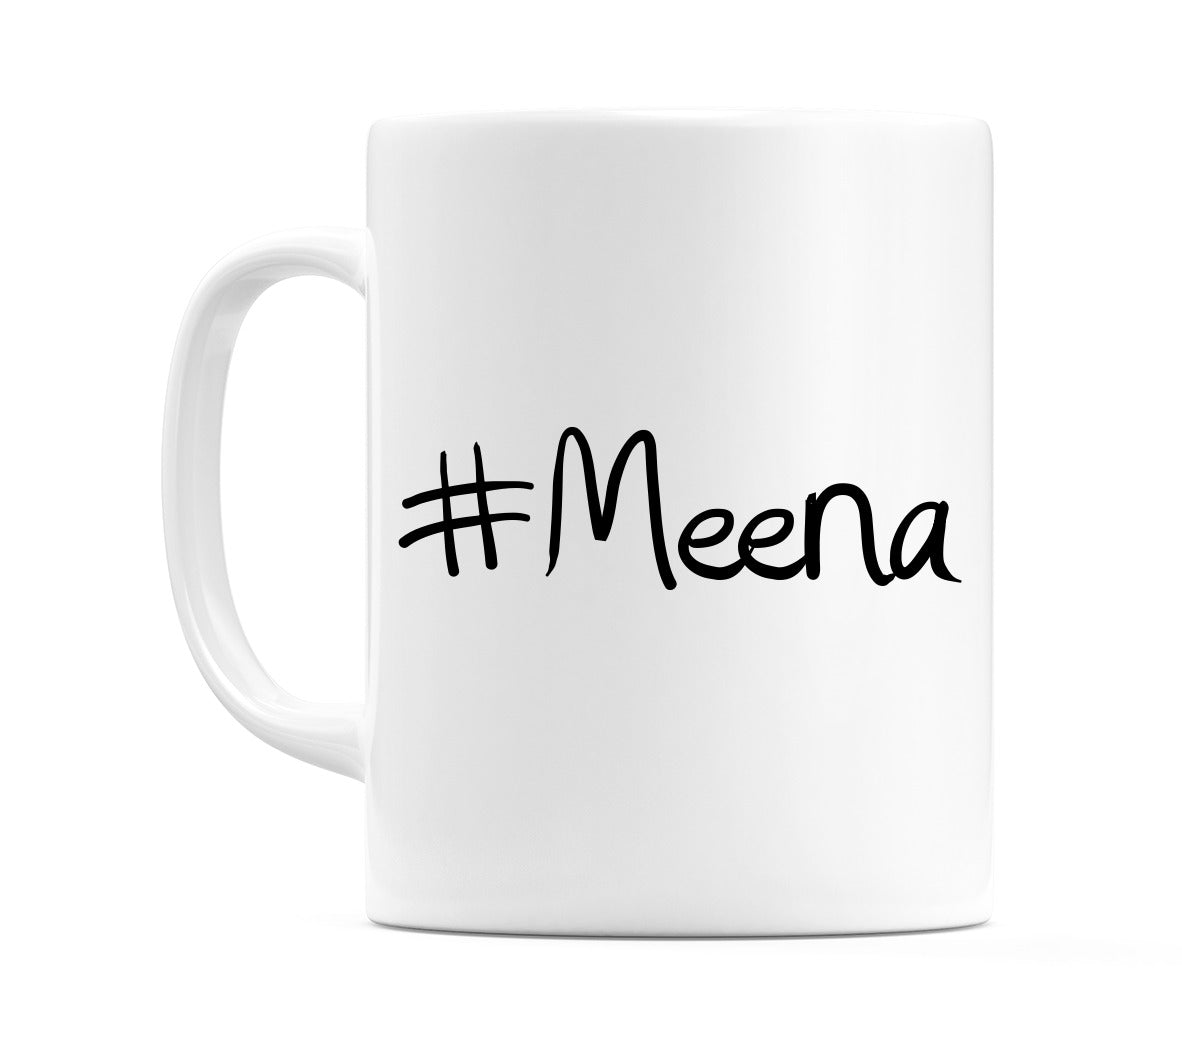 #Meena Mug